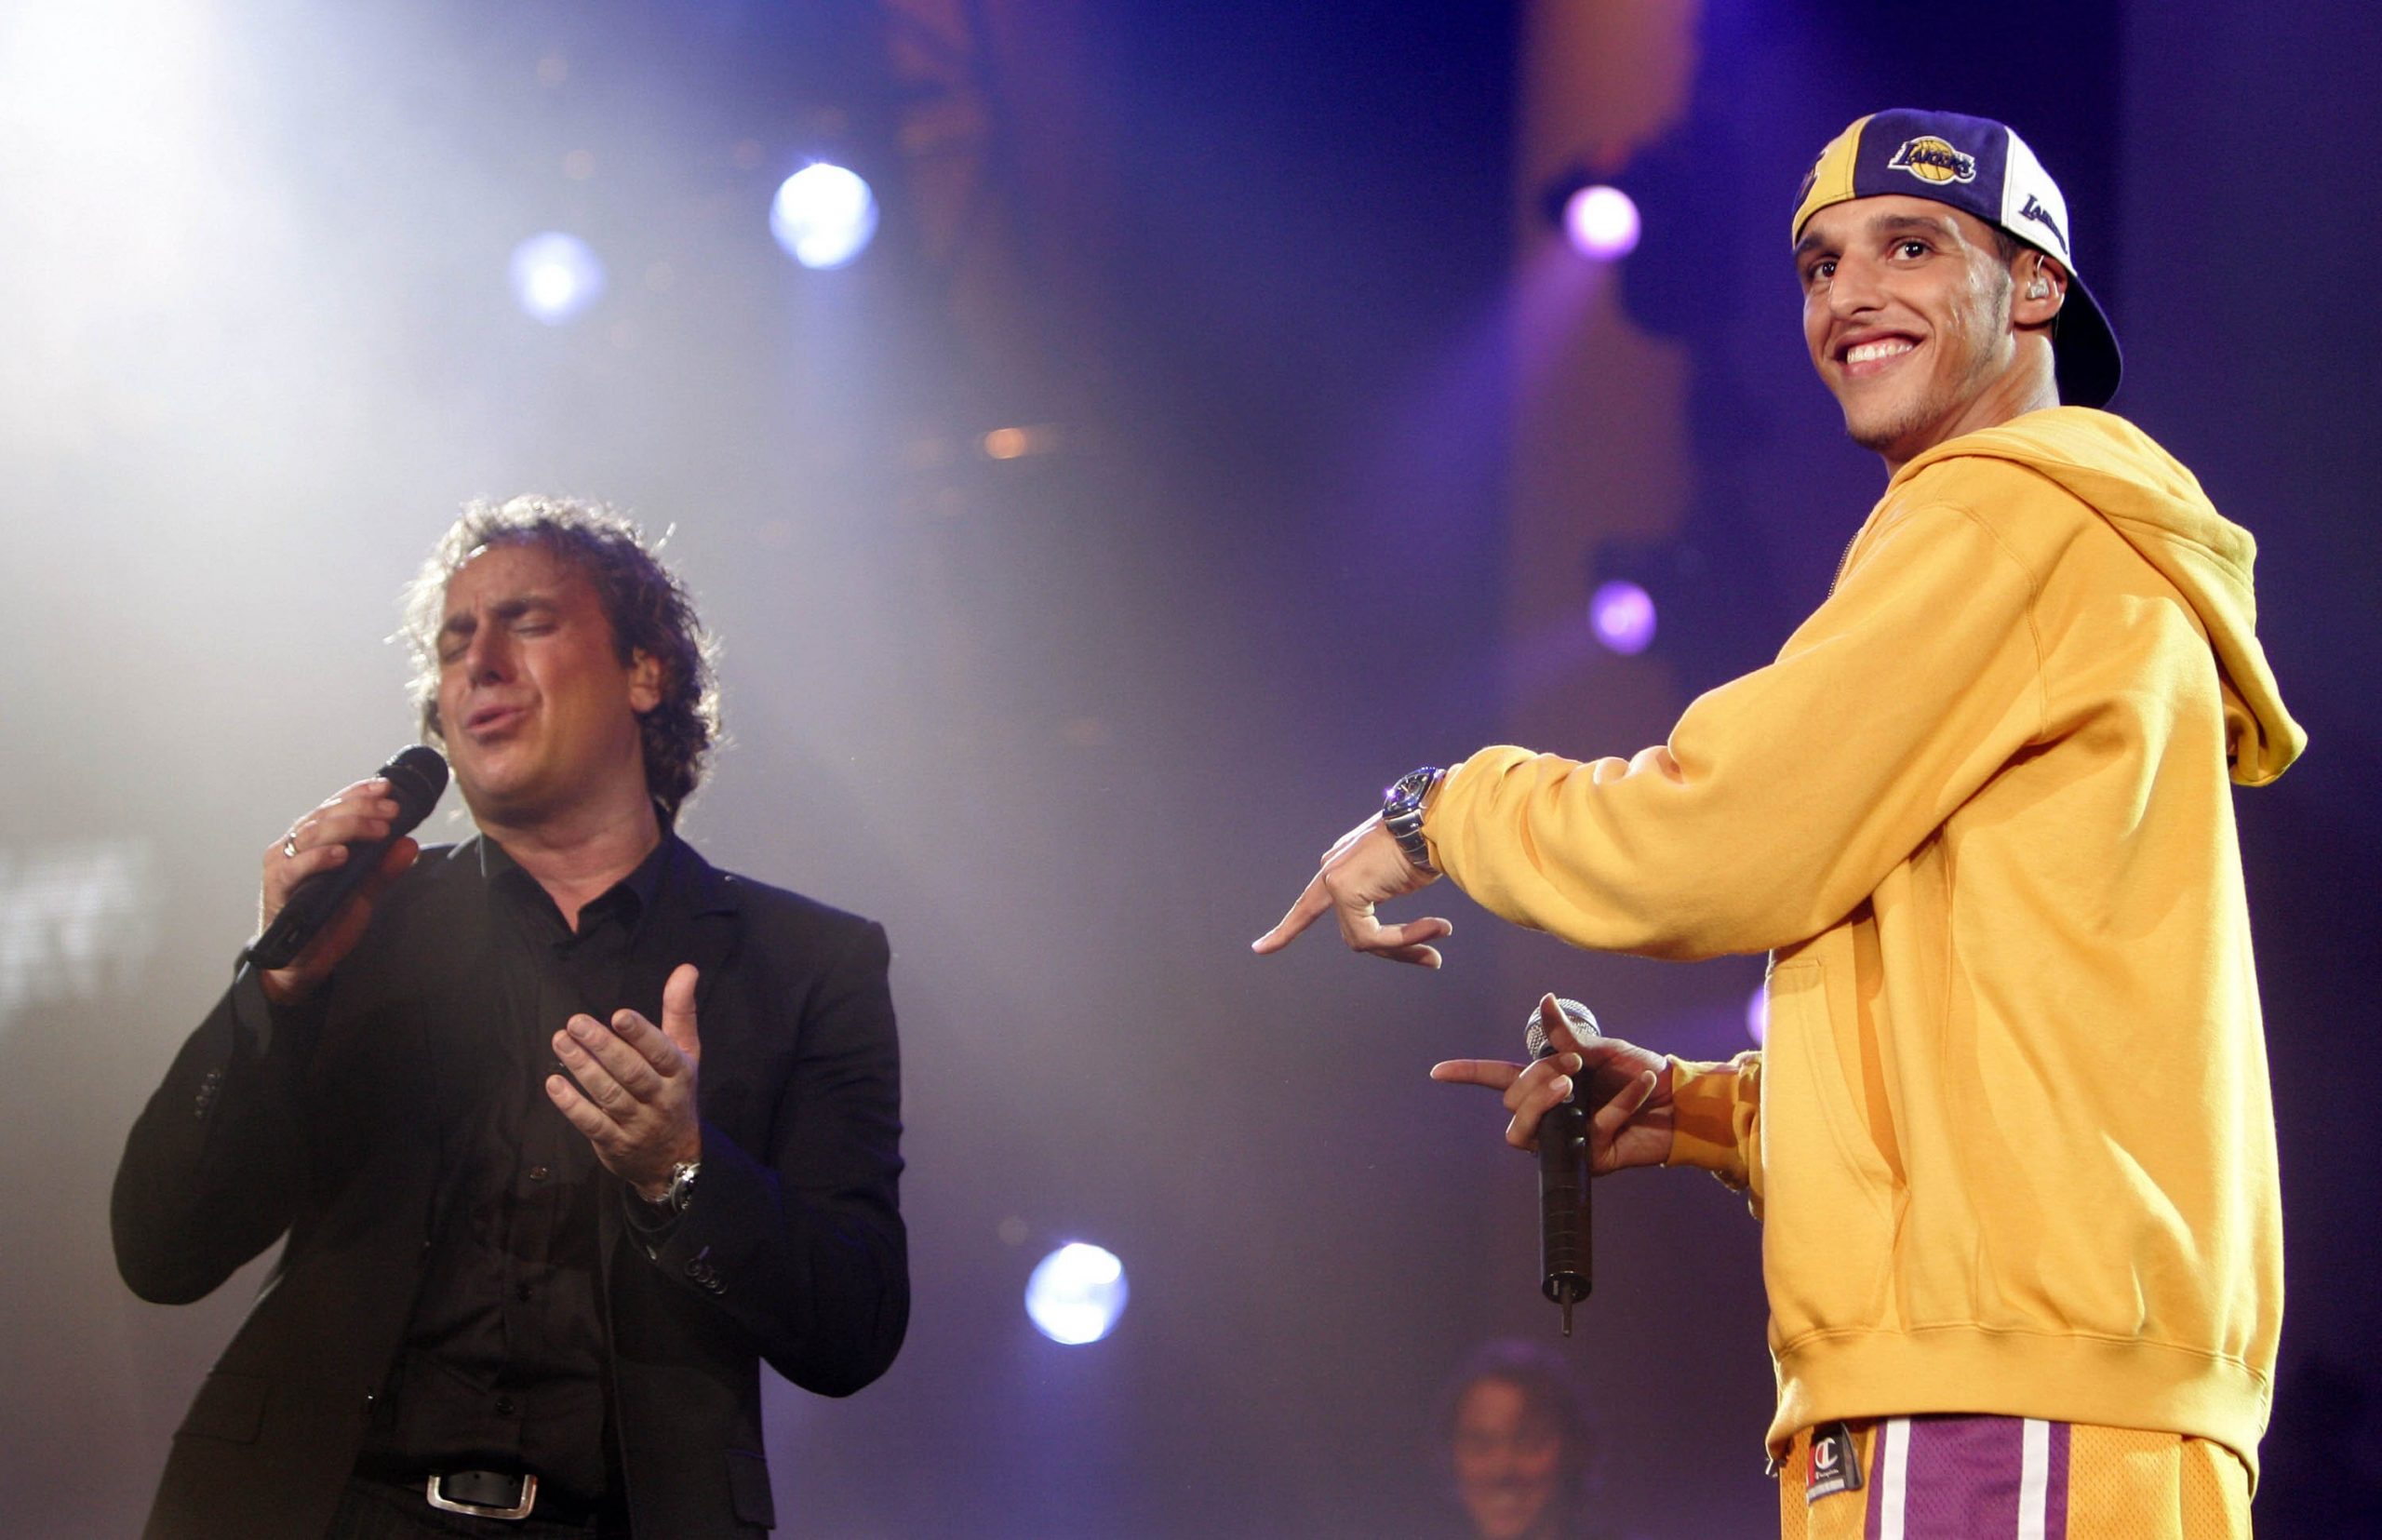 Ali B en Marco Borsato tijdens een concert in Ahoy voor Warchild in 2004. Foto: ANP/Olaf Kraak